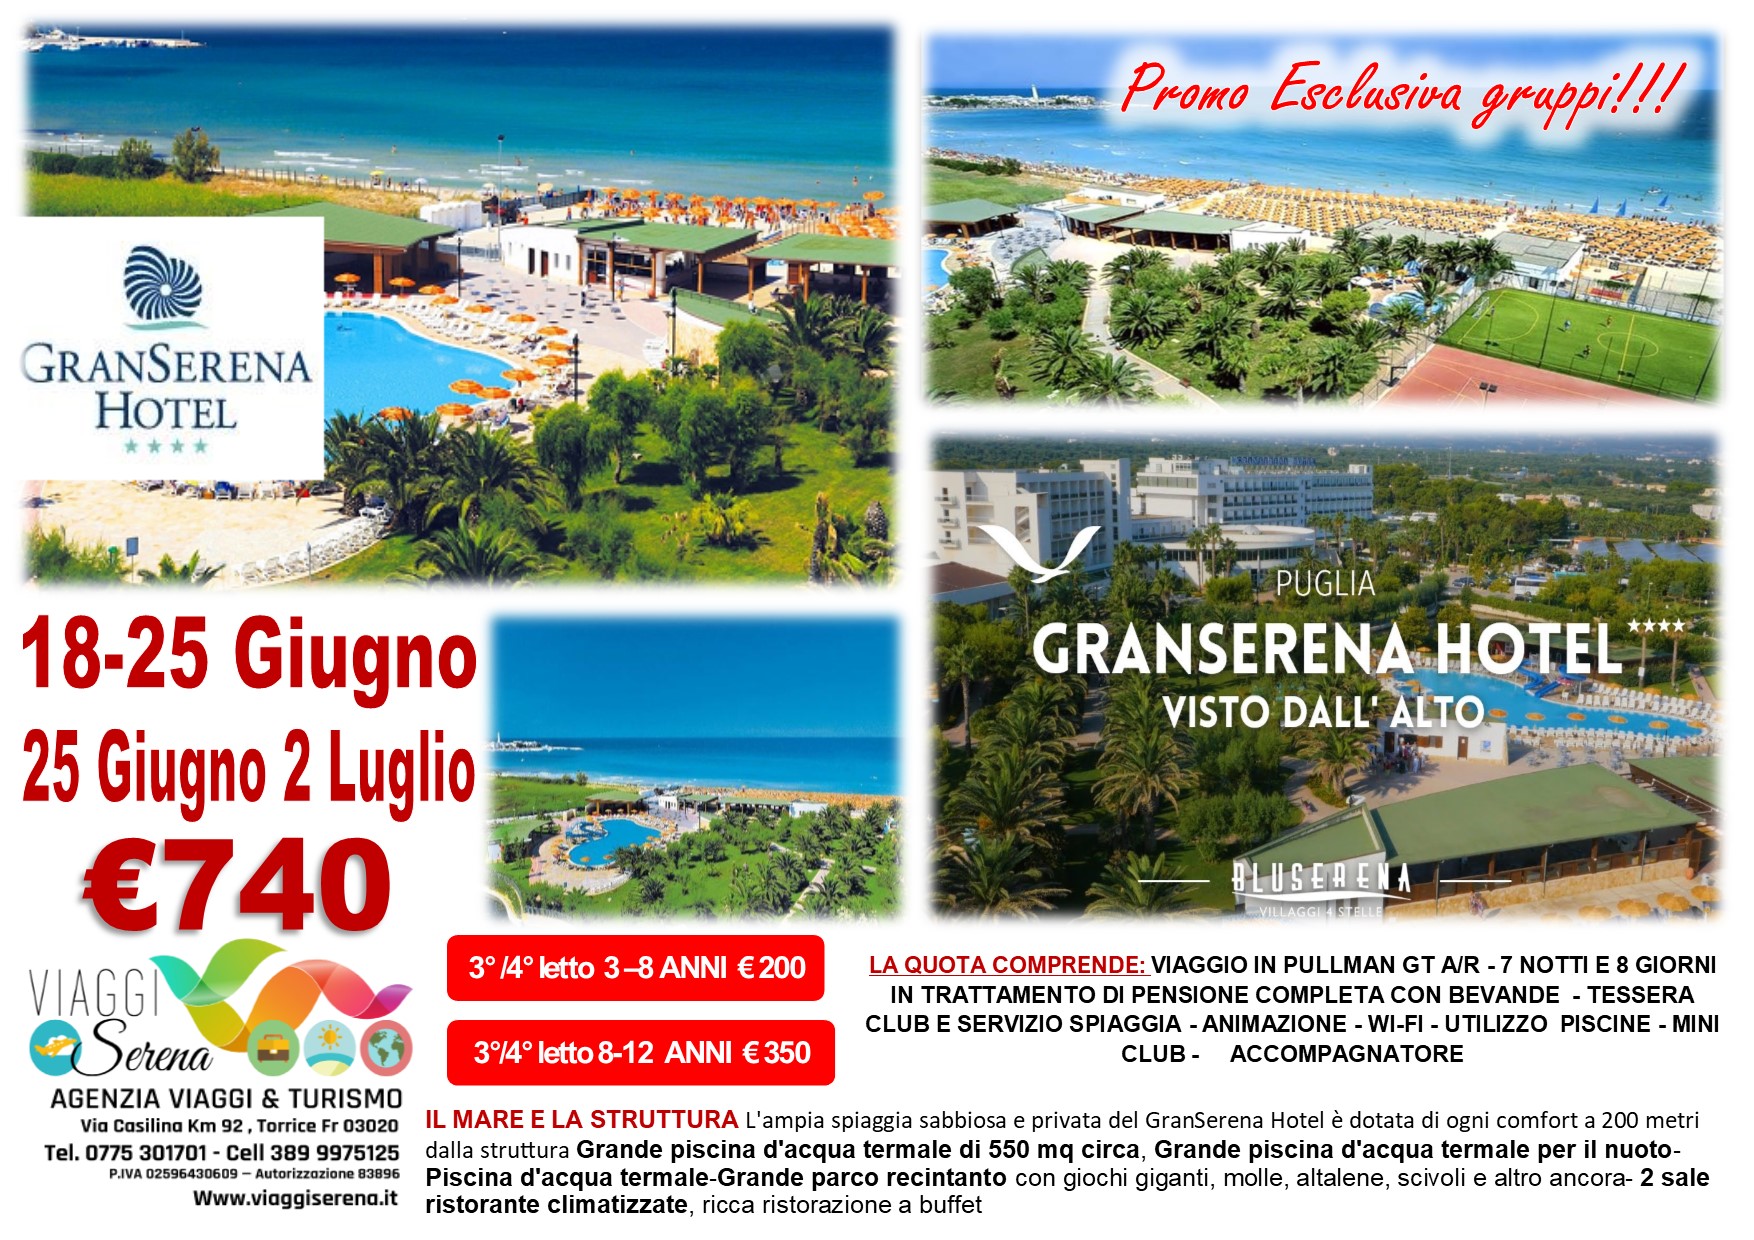 Viaggi di Gruppo: Soggiorno Mare BLU SERENA “Villaggio GranSerena” 25 Giugno 2 Luglio €740,00